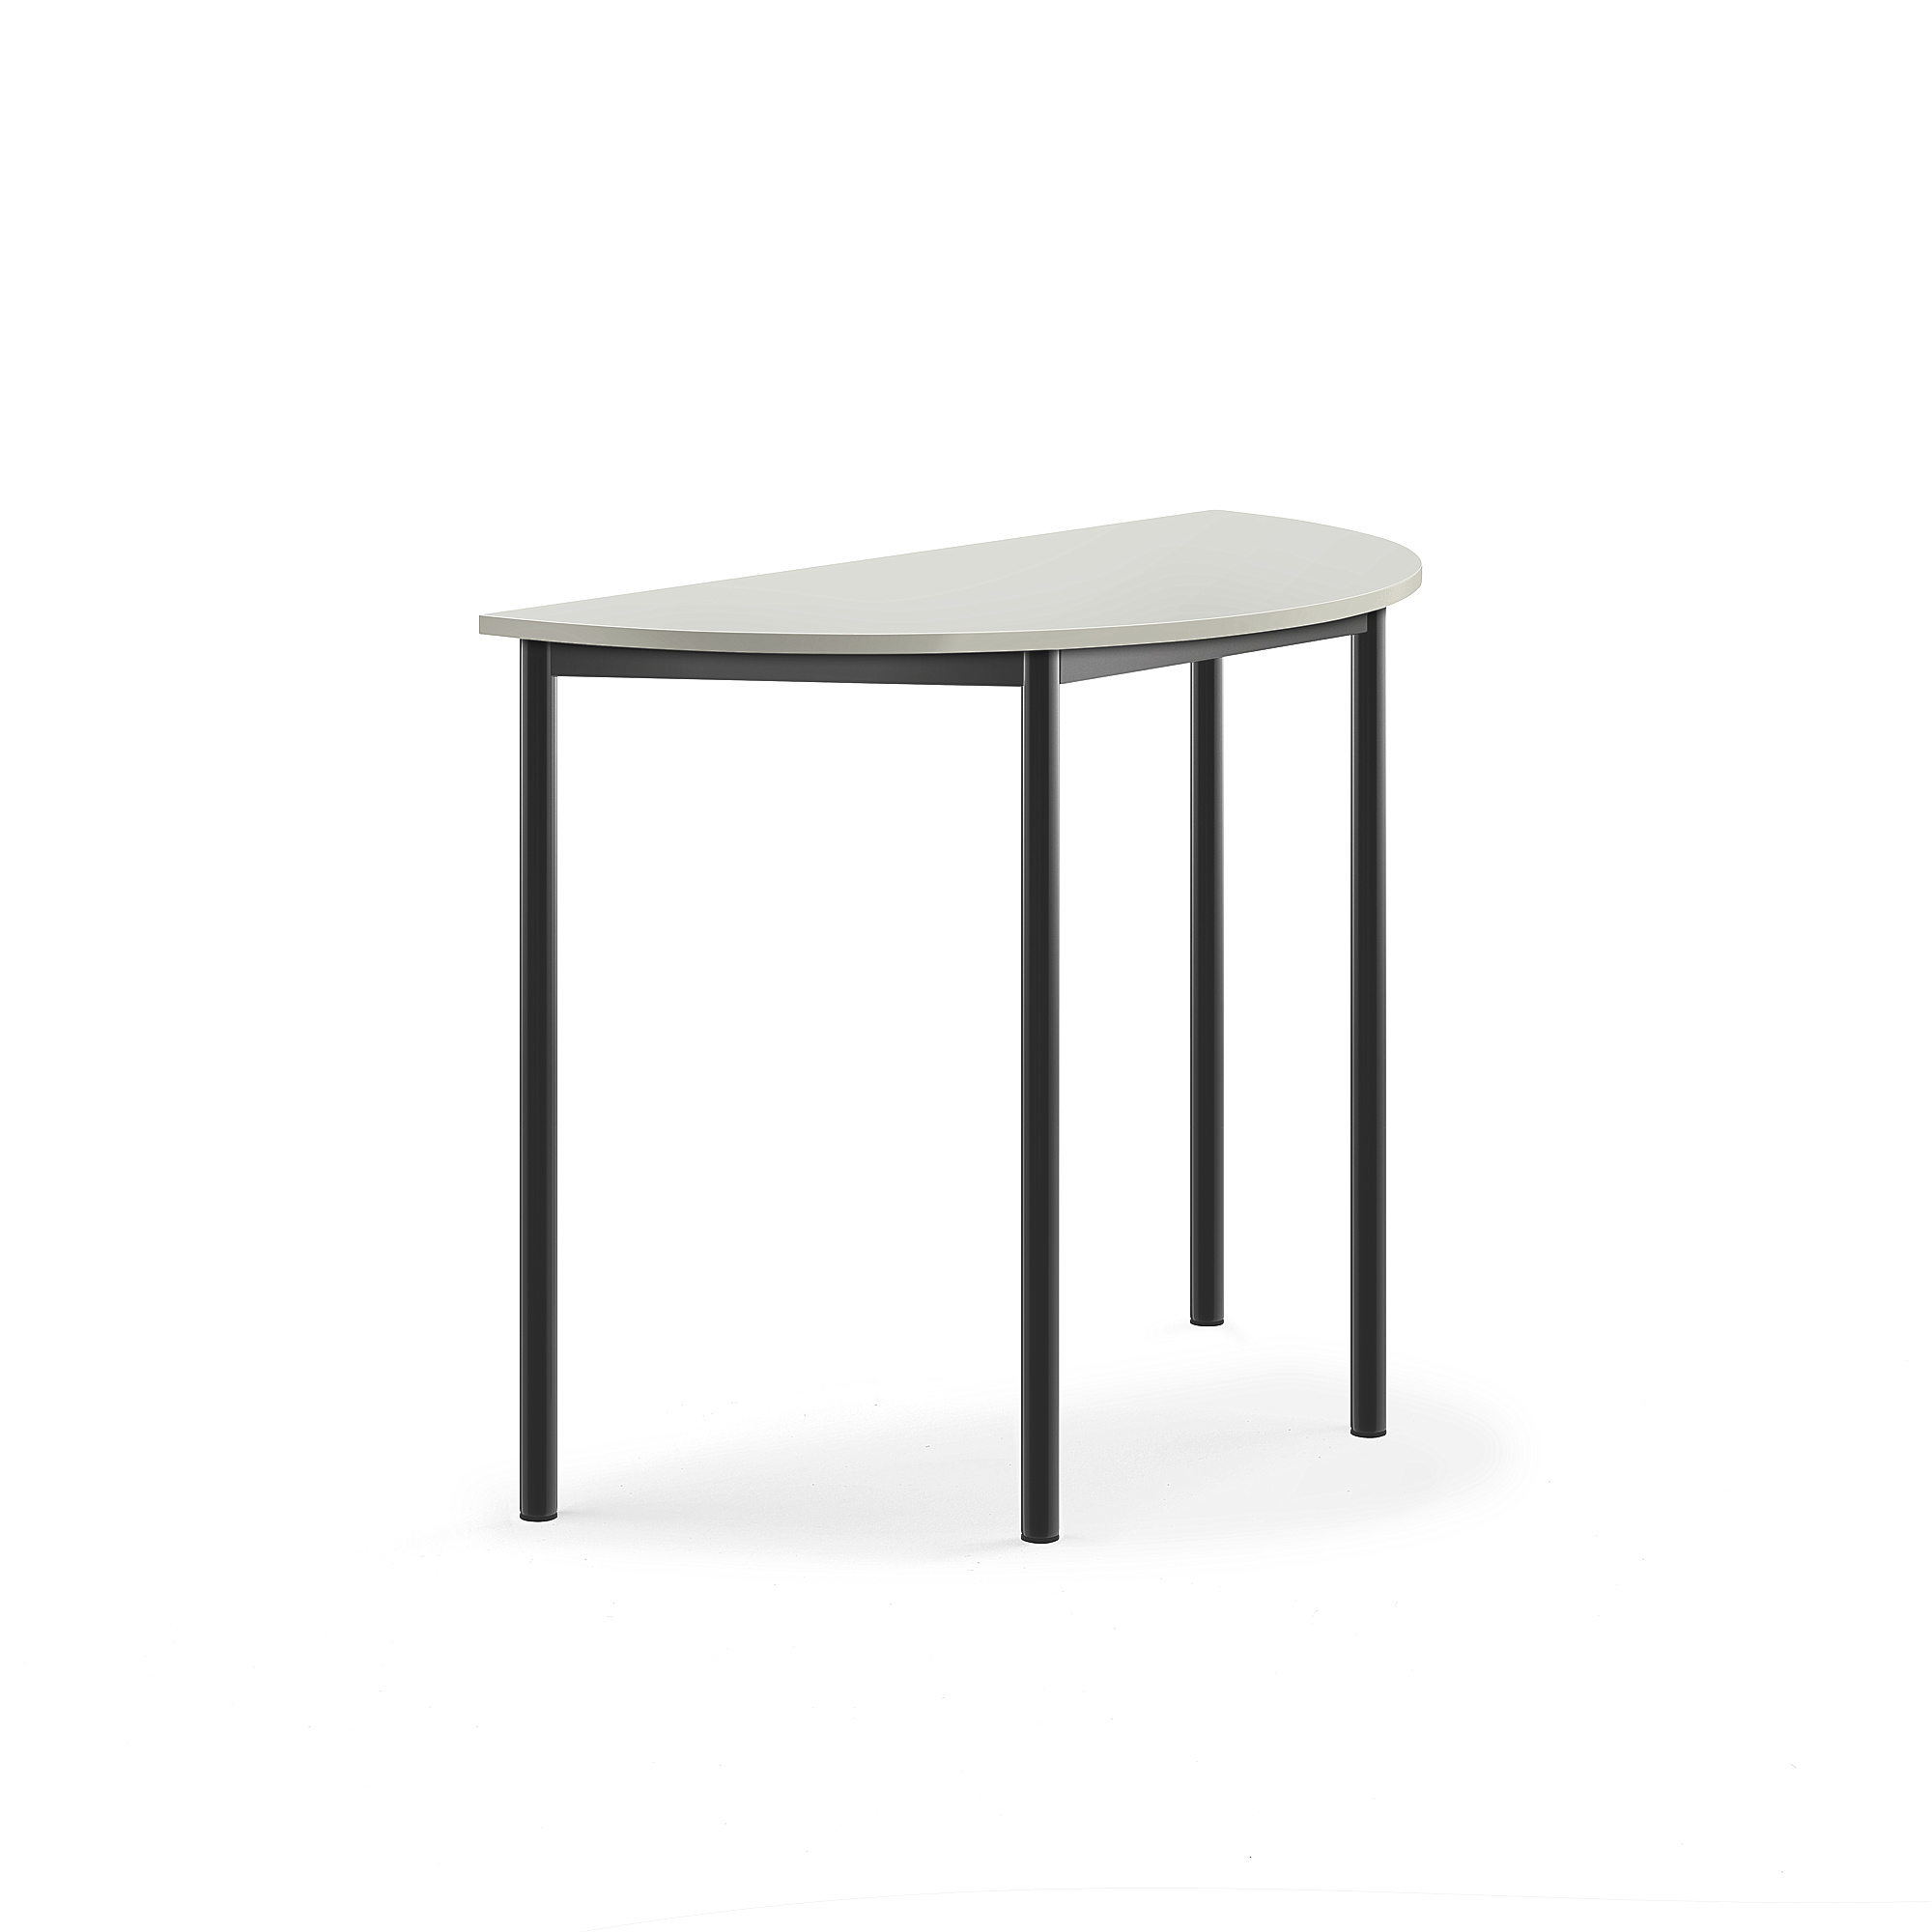 Stůl BORÅS, půlkruh, 1200x600x900 mm, antracitově šedé nohy, HPL deska, šedá